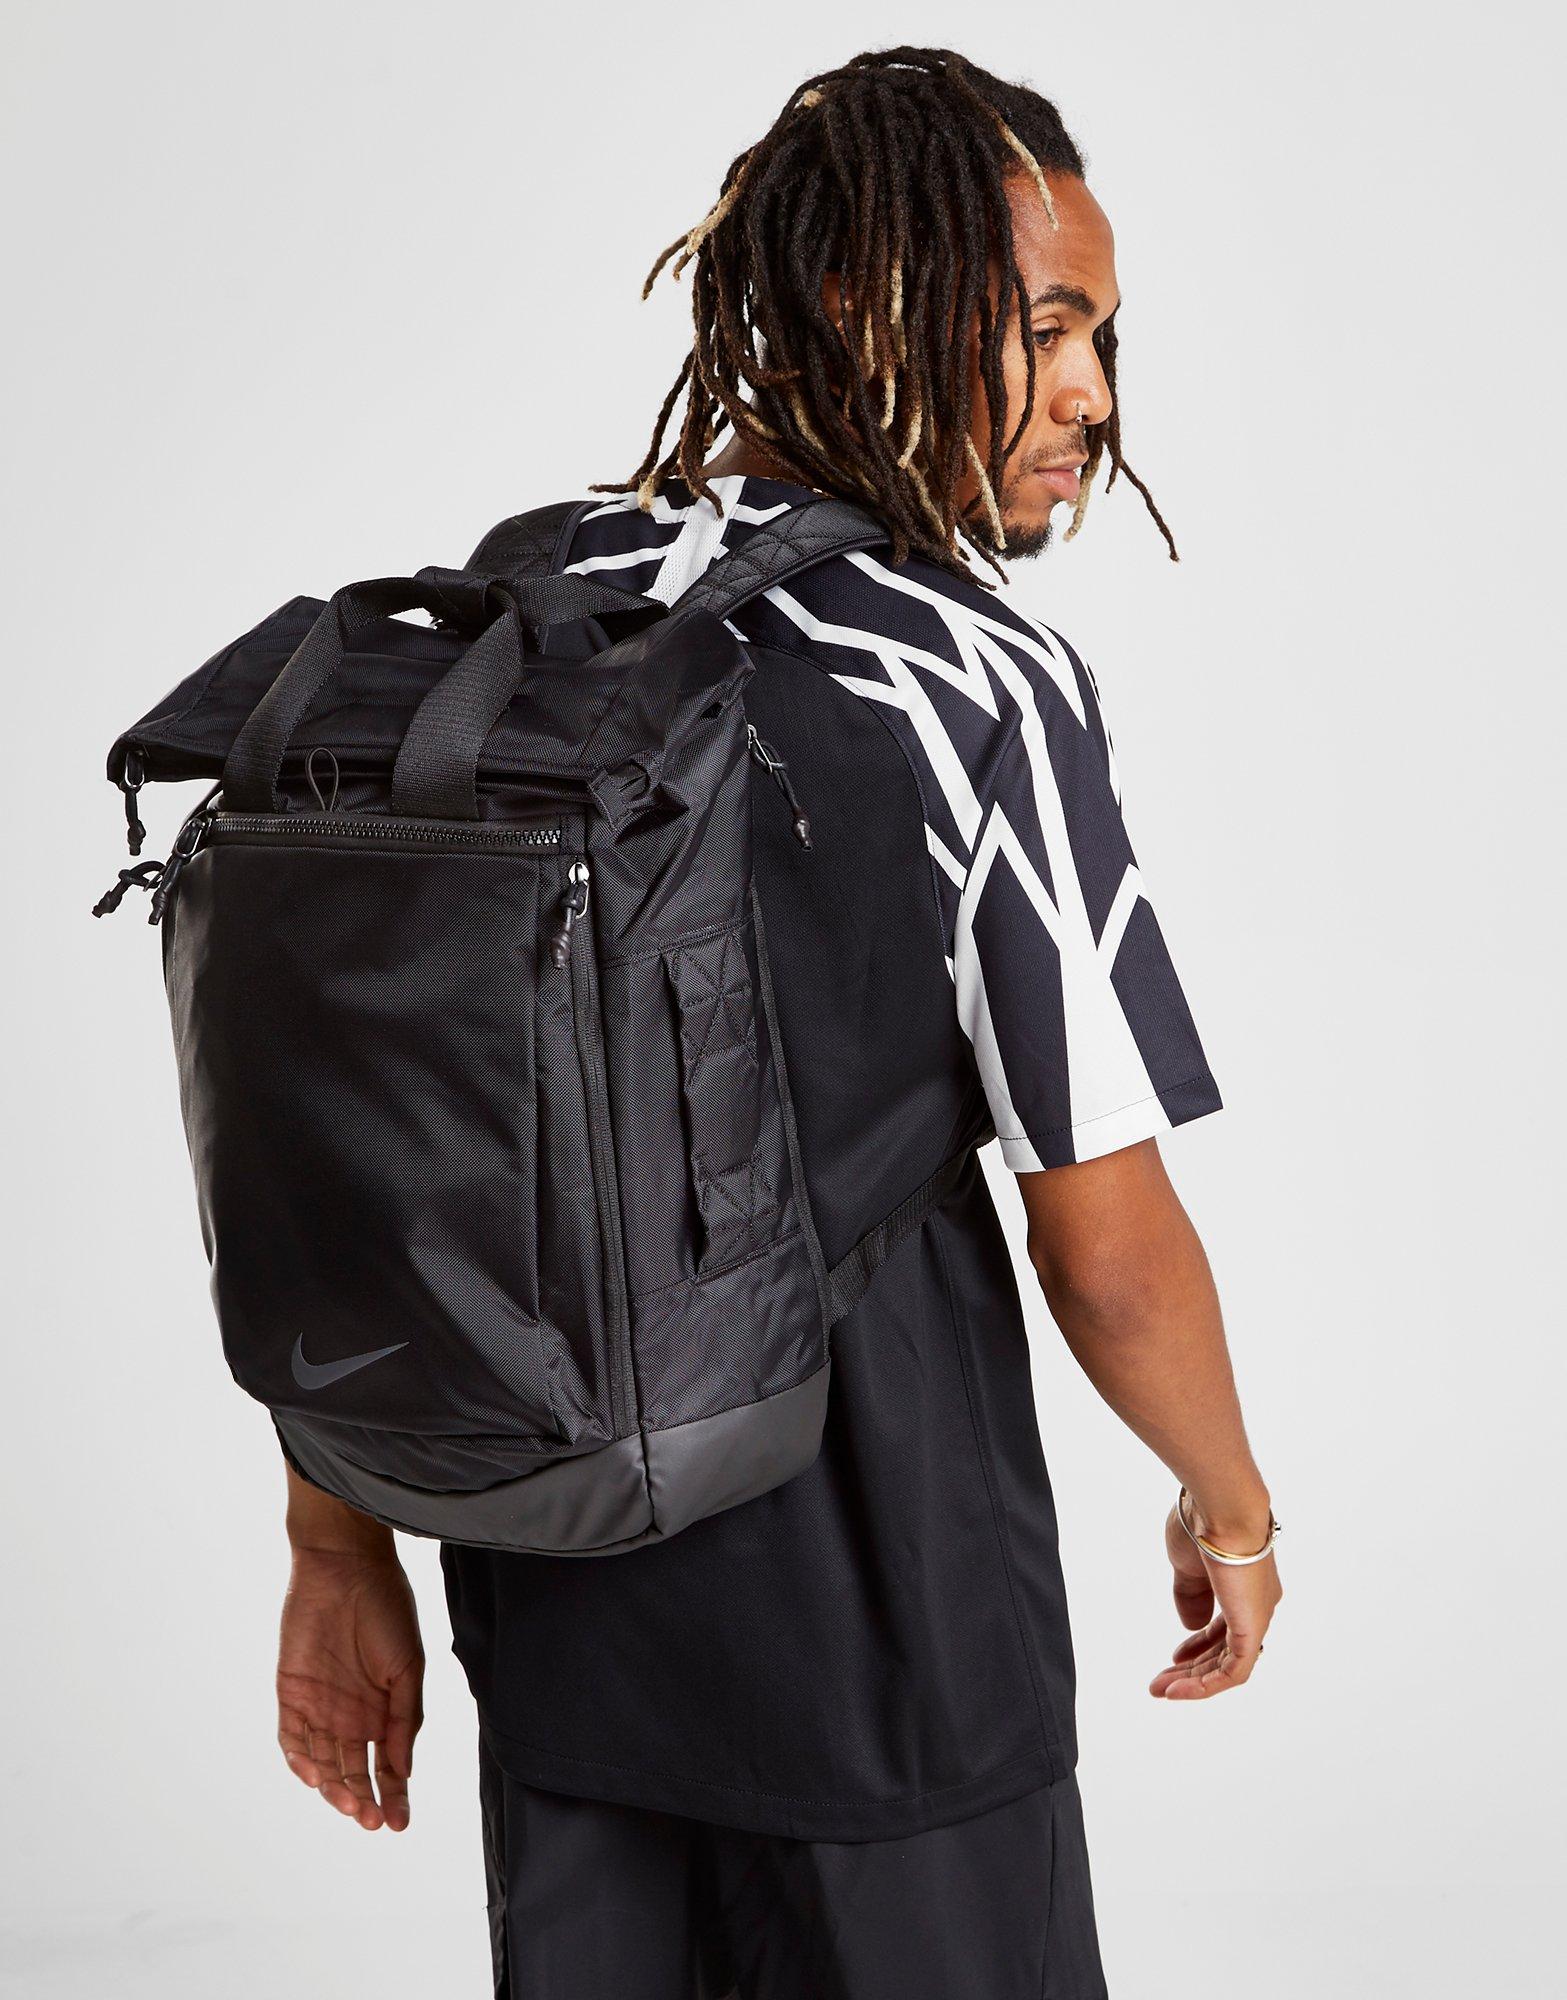 nike vapor energy 2.0 backpack